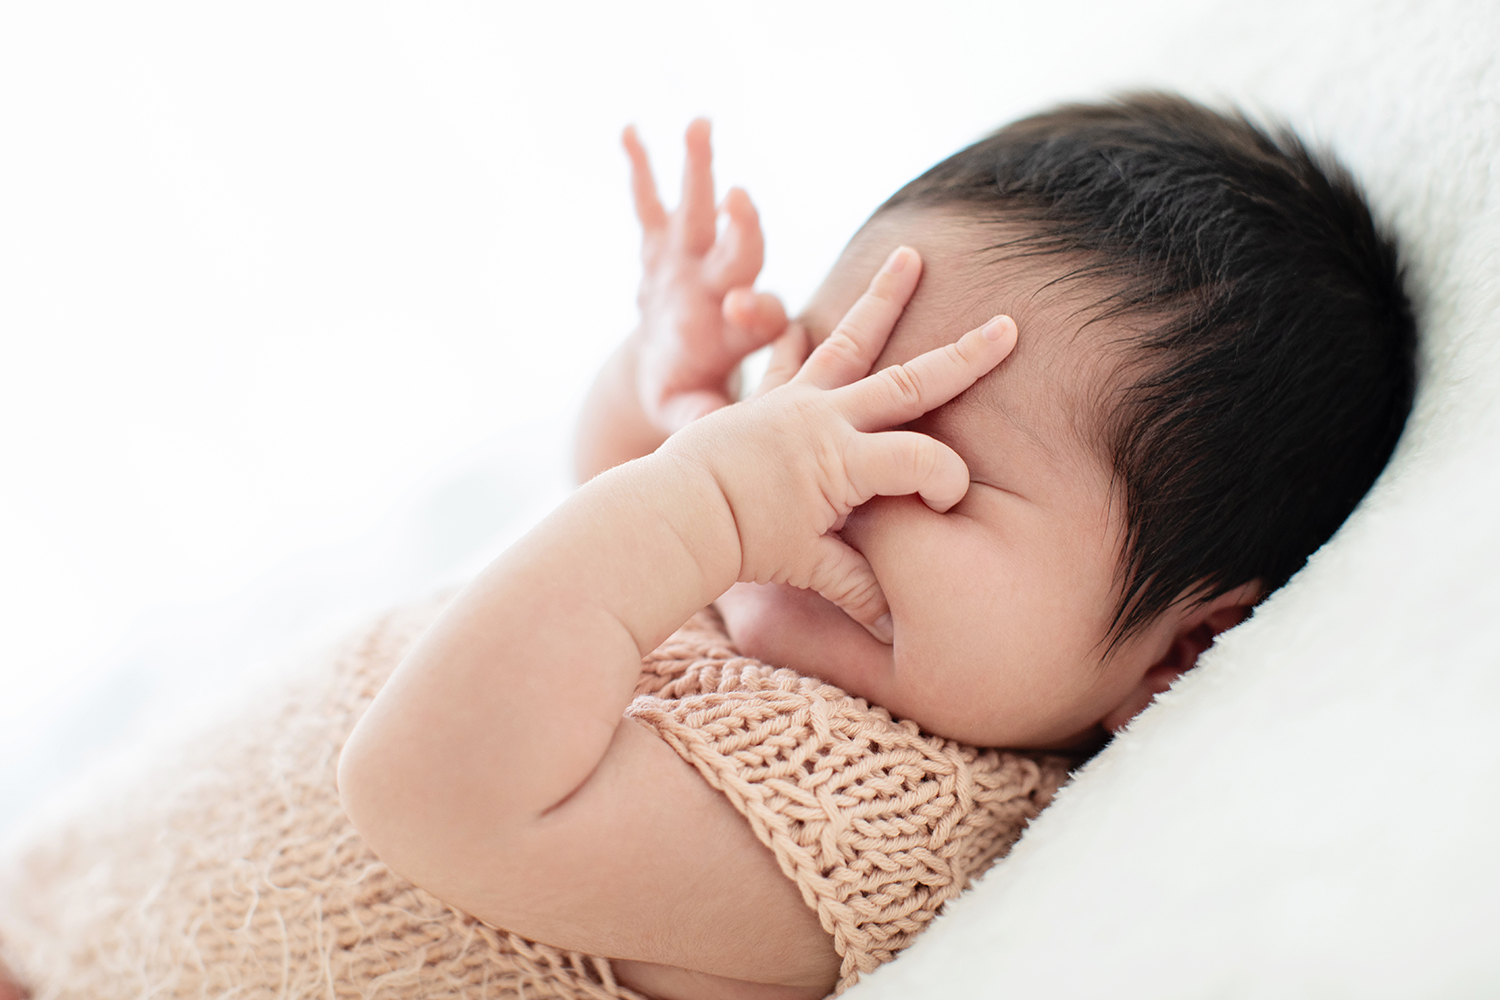 A newborn touches their face.